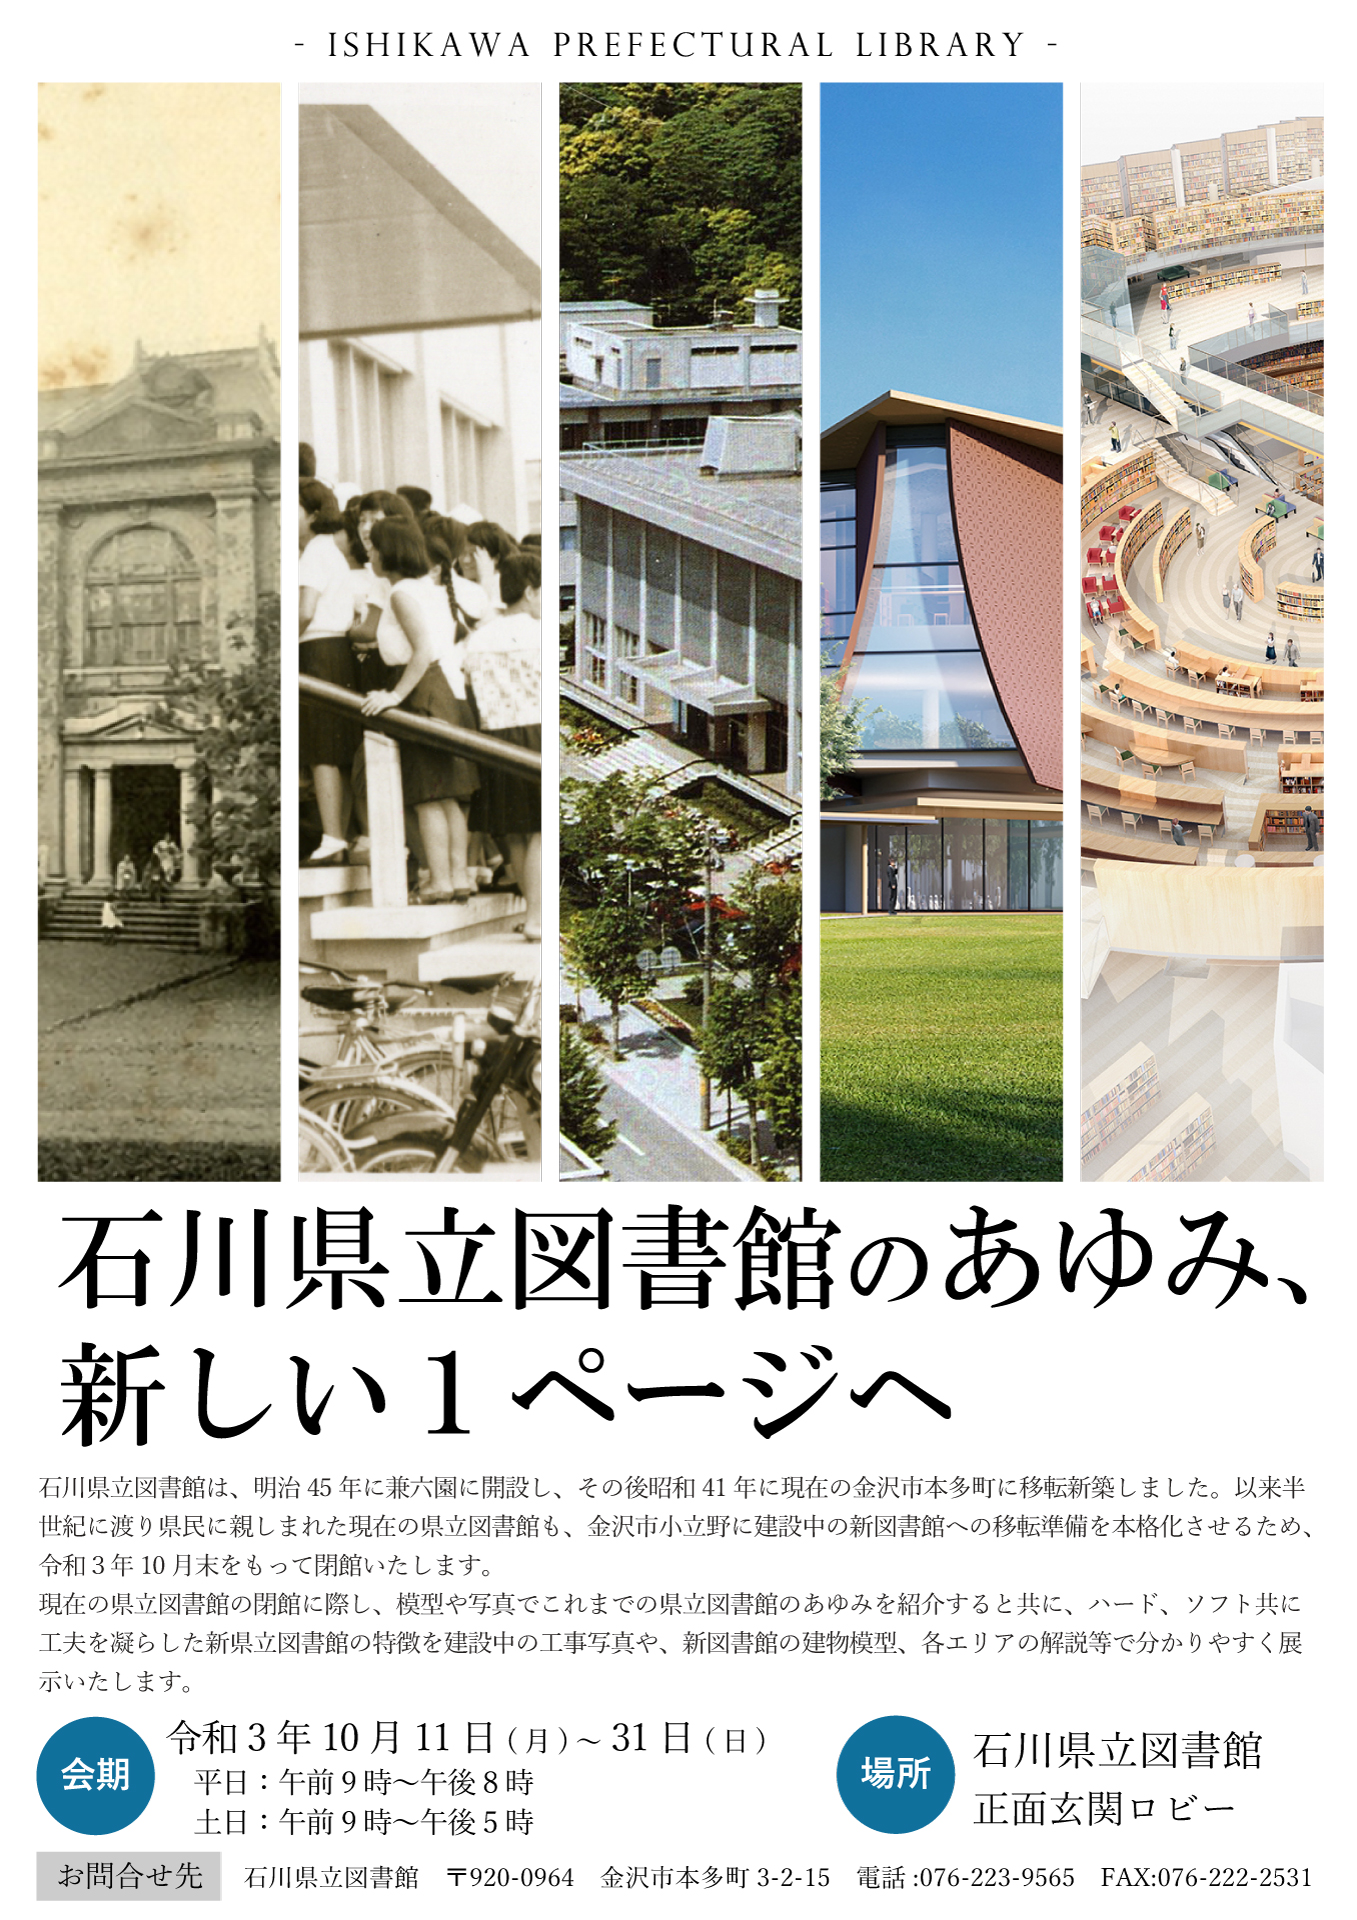 「石川県立図書館のあゆみ、新しい1ページへ」